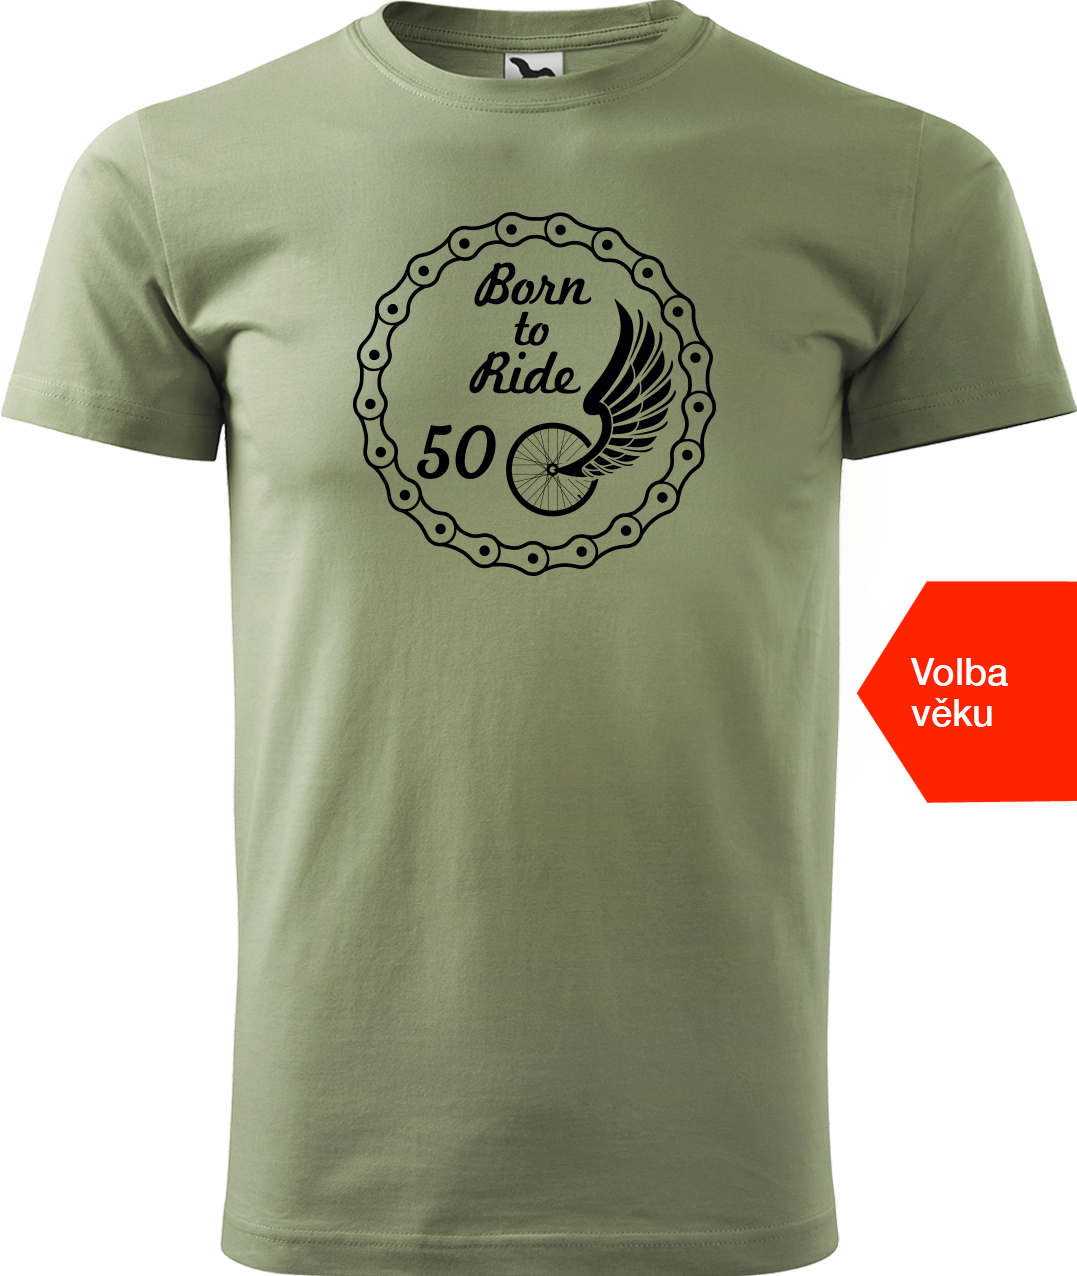 Pánské tričko pro cyklistu s věkem - Born to Ride (wings) Velikost: S, Barva: Světlá khaki (28)